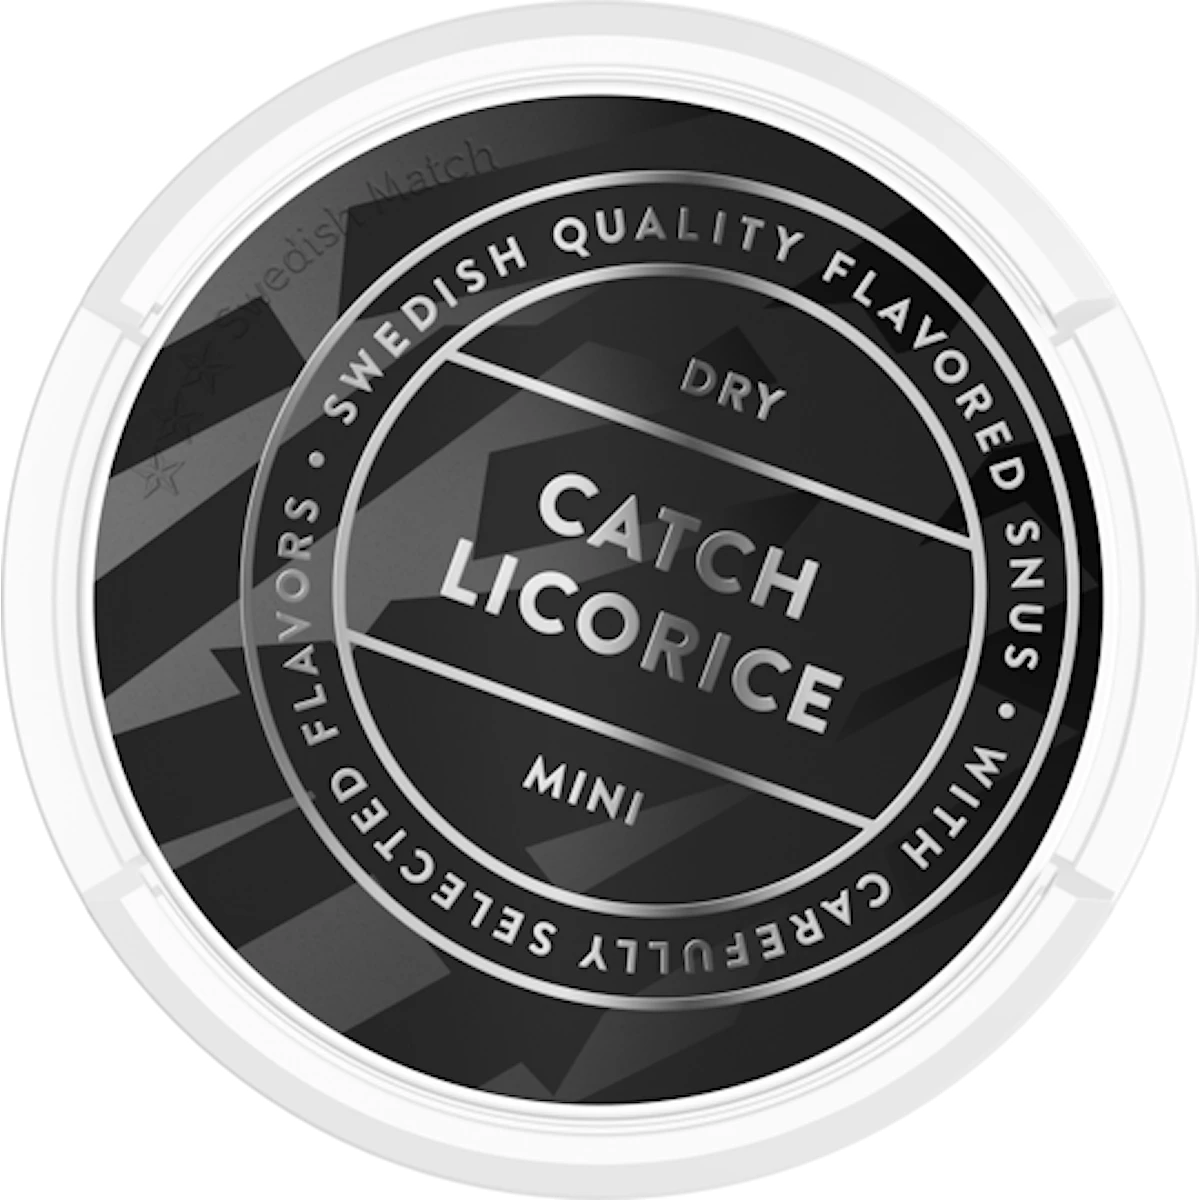 Catch Licorice White Mini